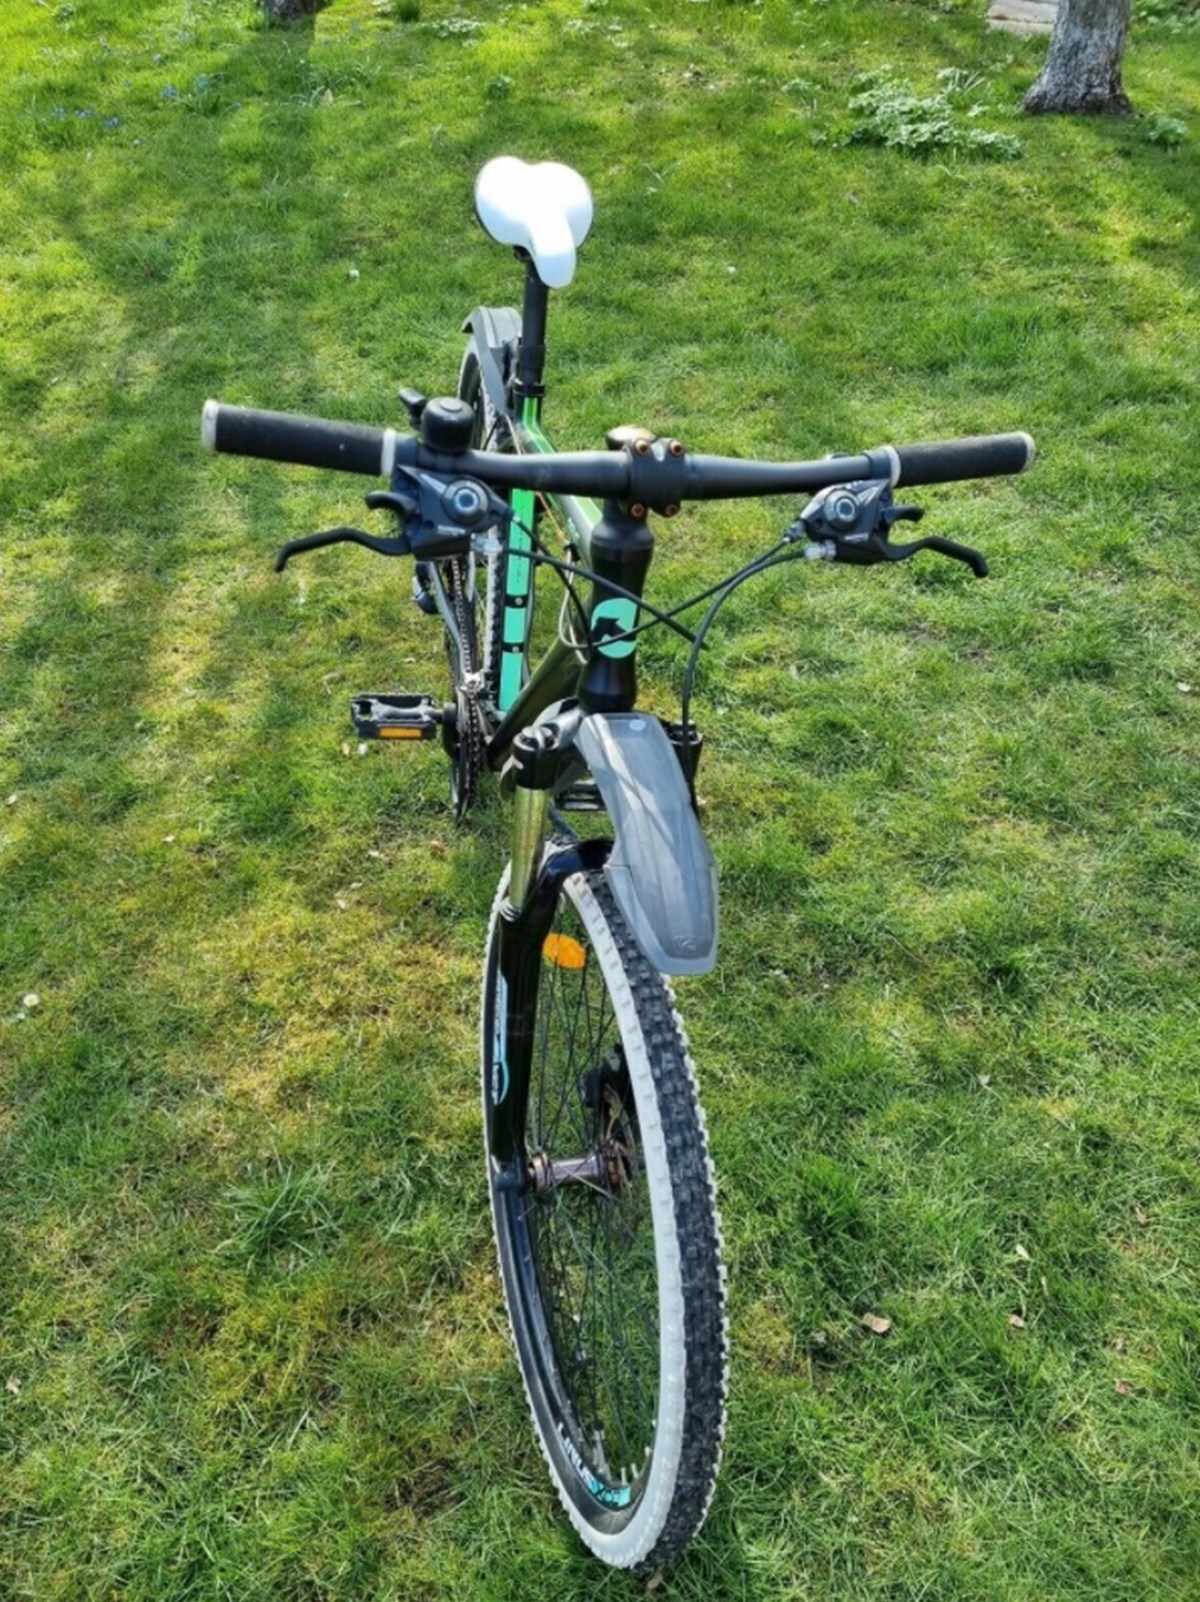 Rene fra Solrød Strand sælger denne mountainbike på DBA. Han håber at få 1.500 kroner for den. Cyklen er af mærket Nishiki Reno og er en hardtail med 26” tommer